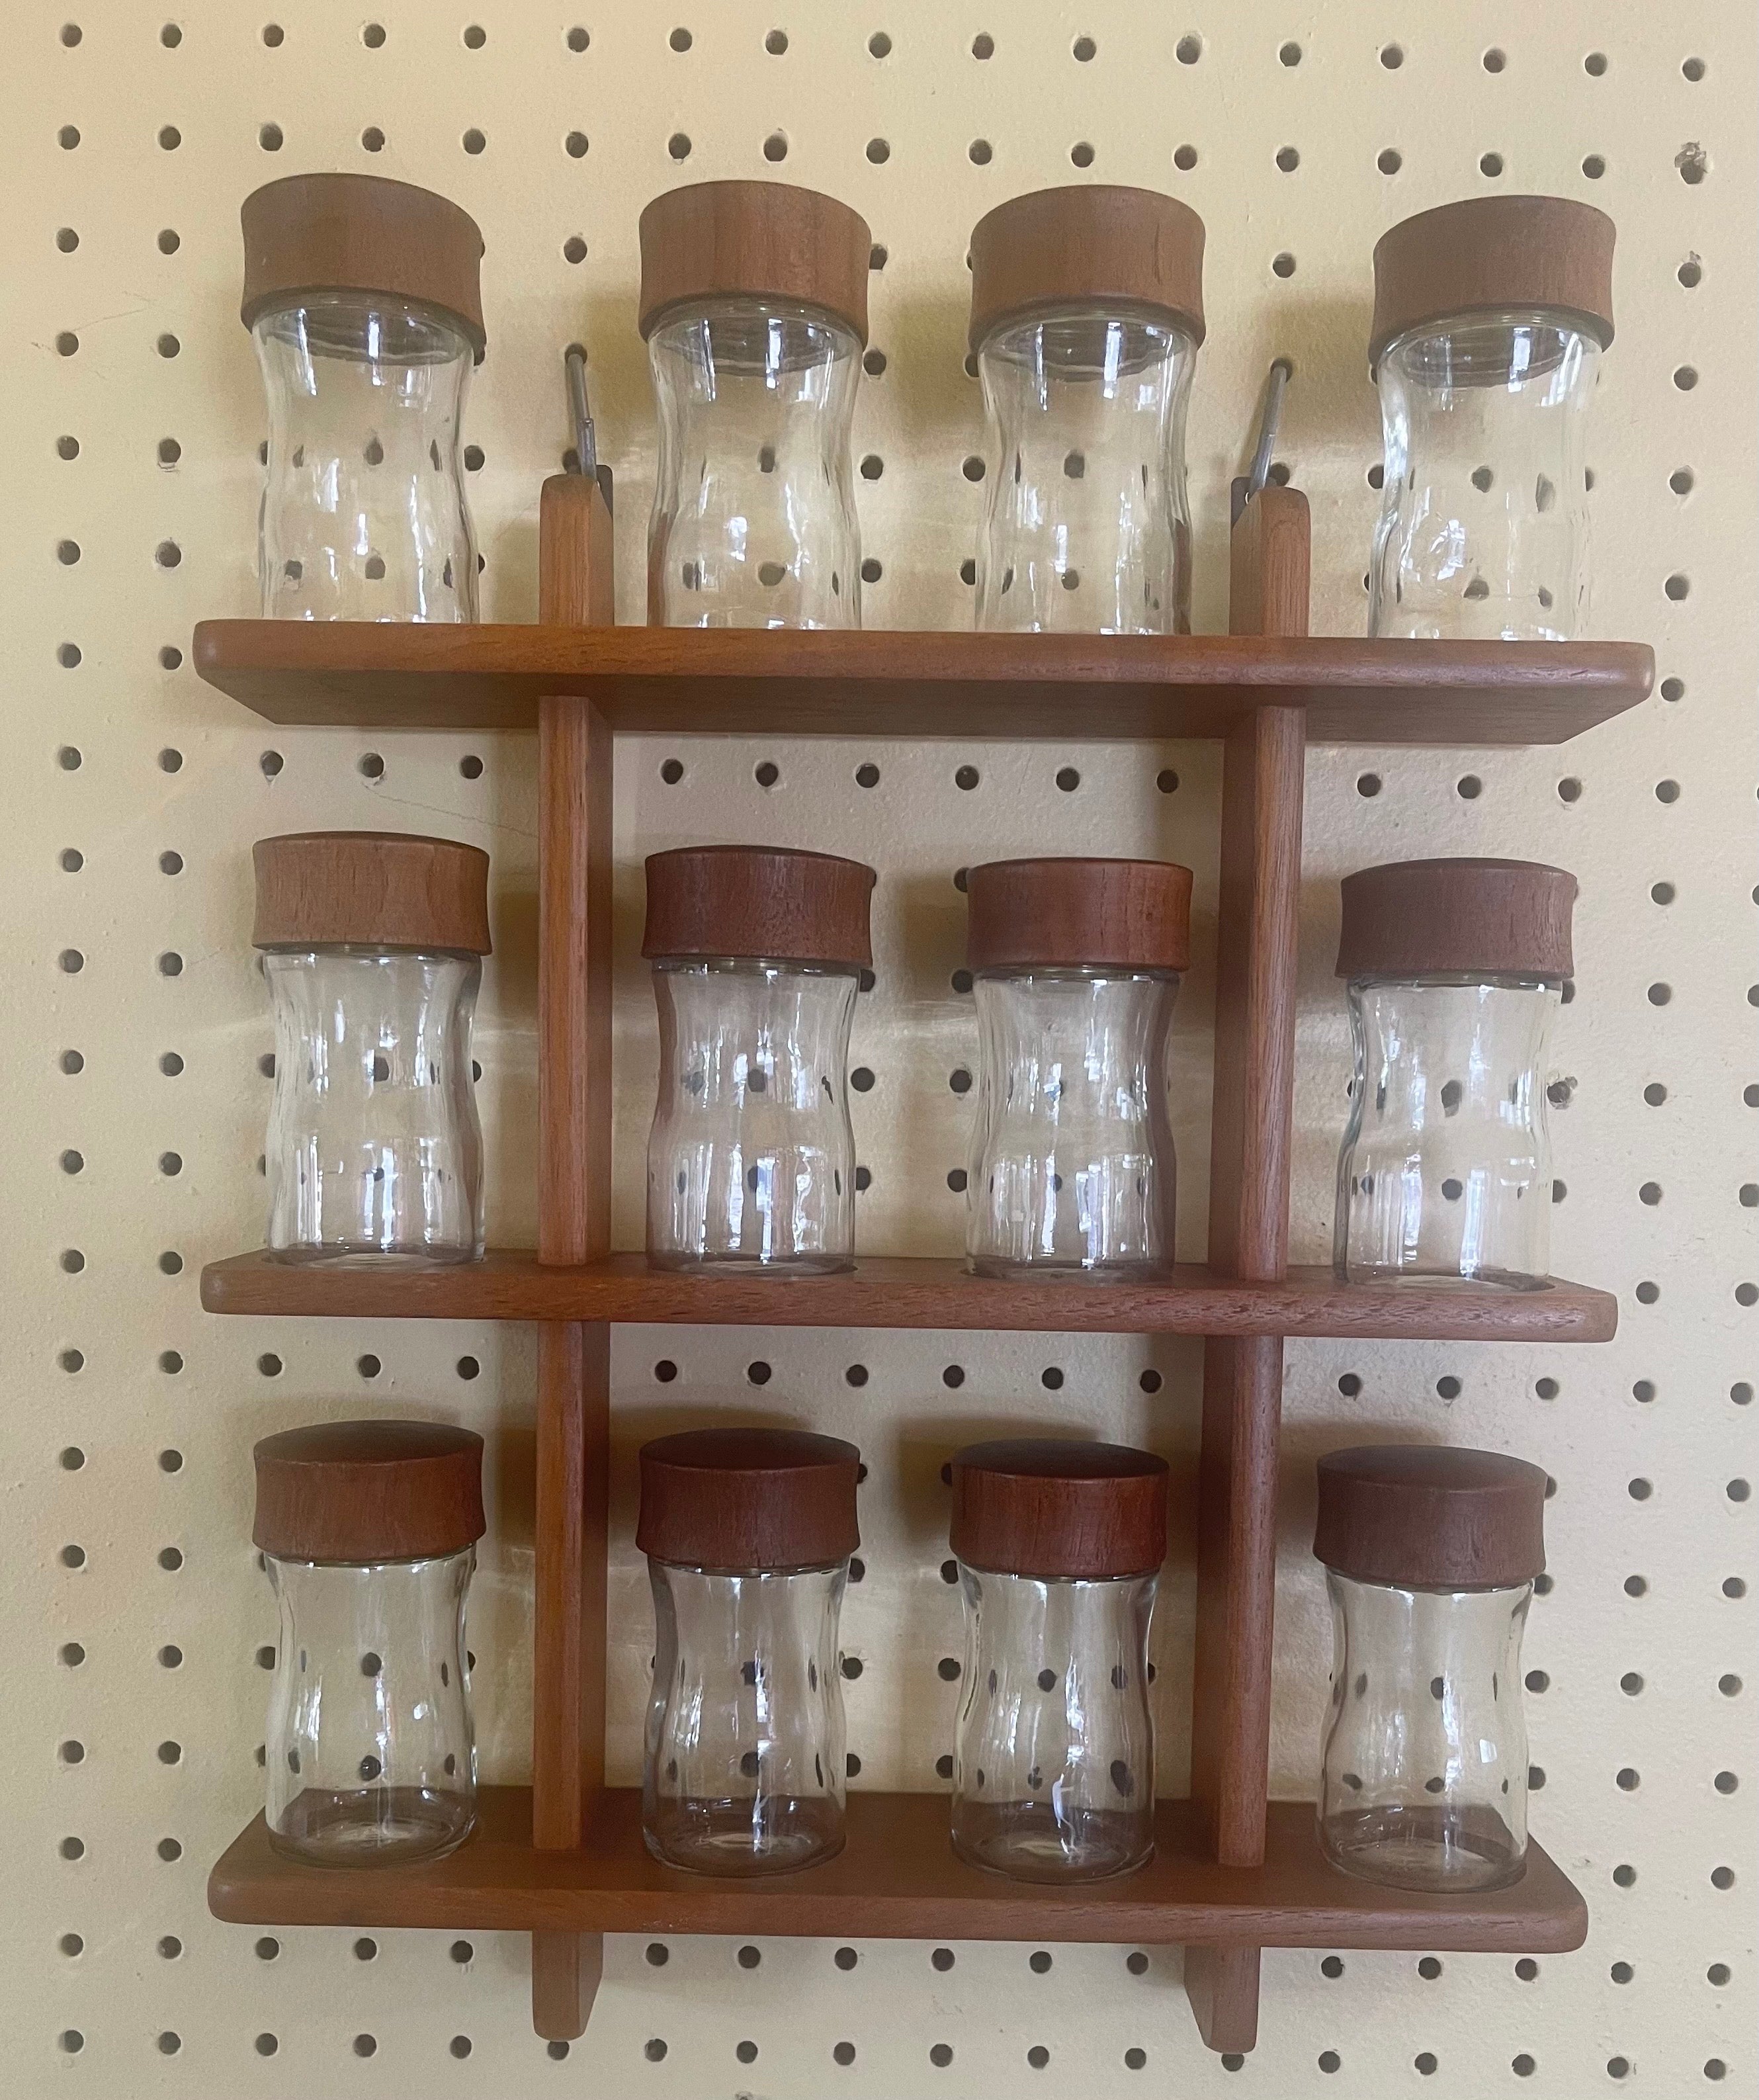 Dänisches modernes Gewürzregal mit zwölf Gläsern aus Teakholz von Digsmed, ca. 1960er Jahre. Es sind zwei Regale erhältlich, die nebeneinander an der Wand angebracht werden können, um ein viel größeres Set mit 24 Gläsern zu bilden. Die Regale sind